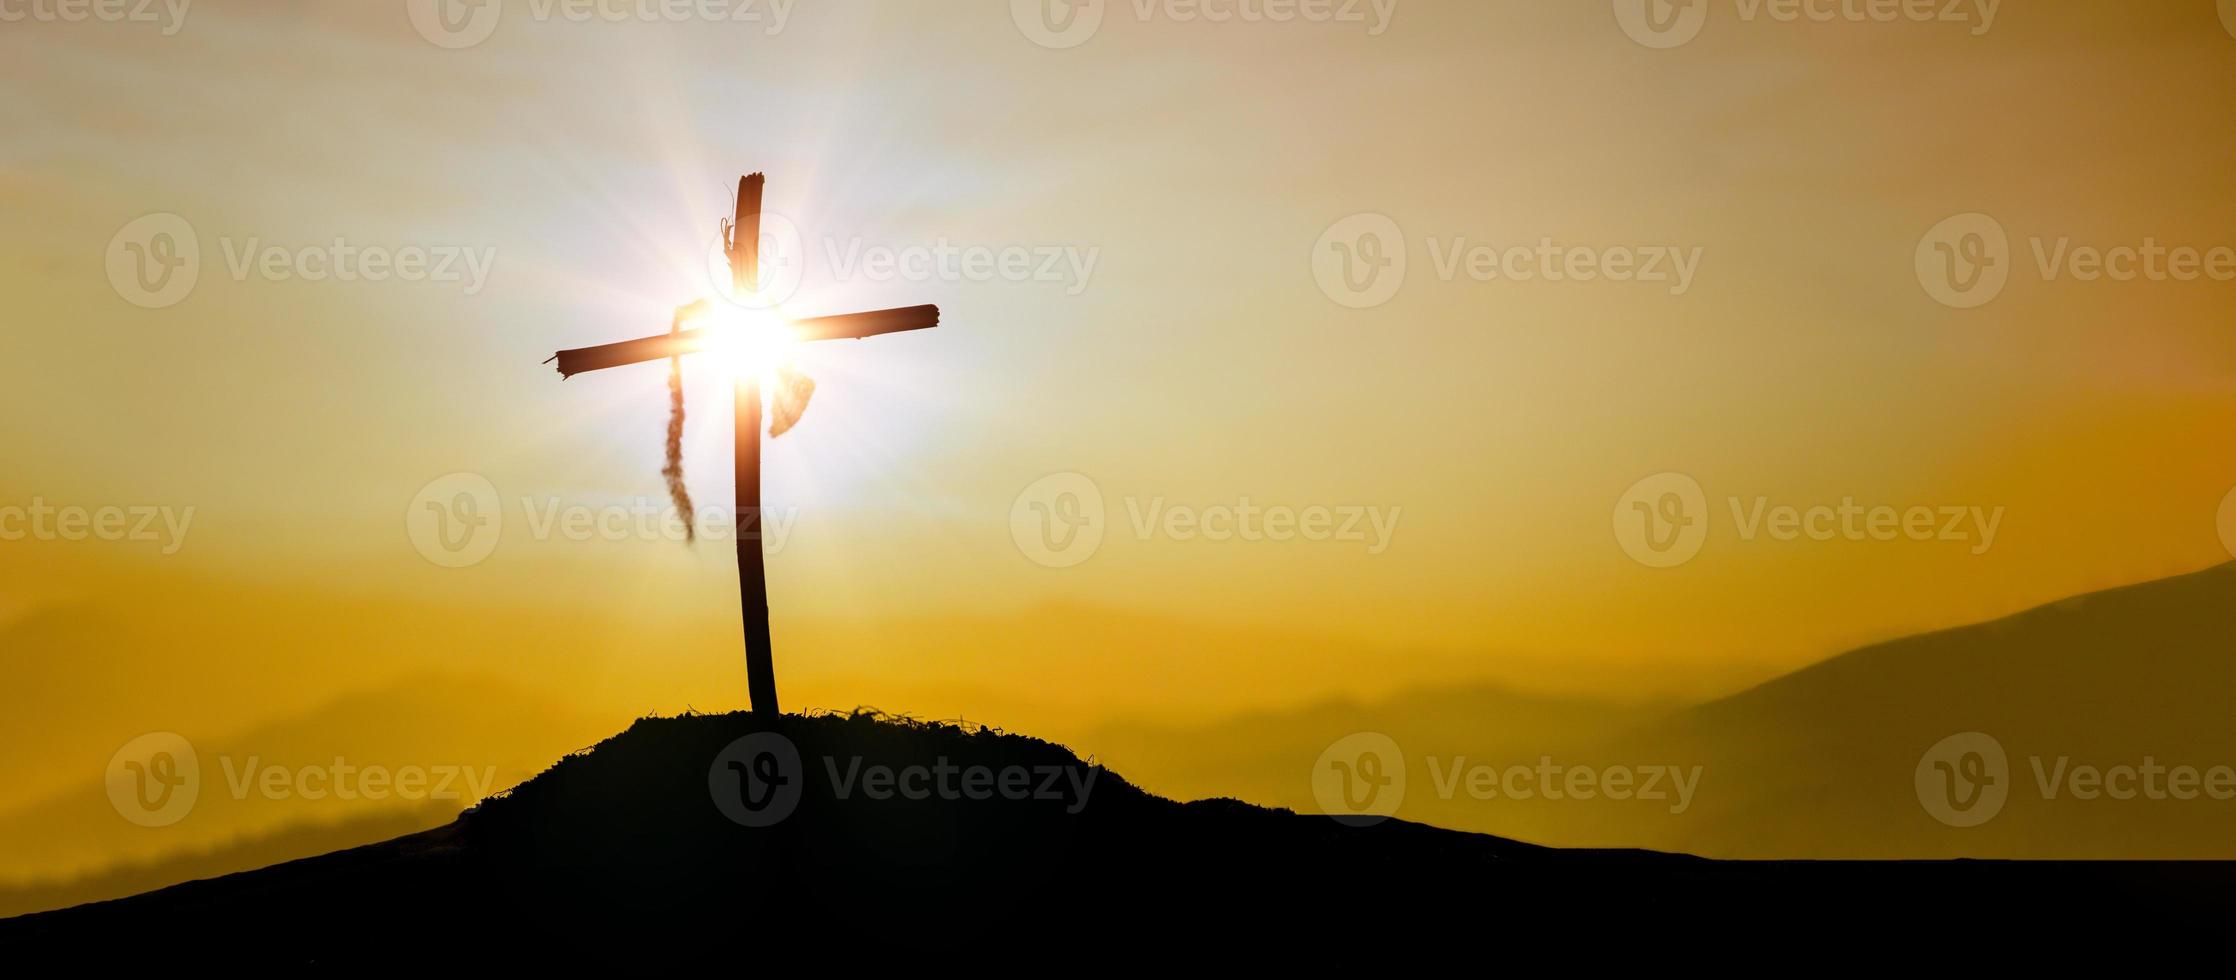 kruisiging van Jezus Christus - kruis Bij zonsondergang. de concept van de opstanding van Jezus in Christendom. kruisiging Aan Golgotha of Golgotha heuvels in heilig Bijbel. foto